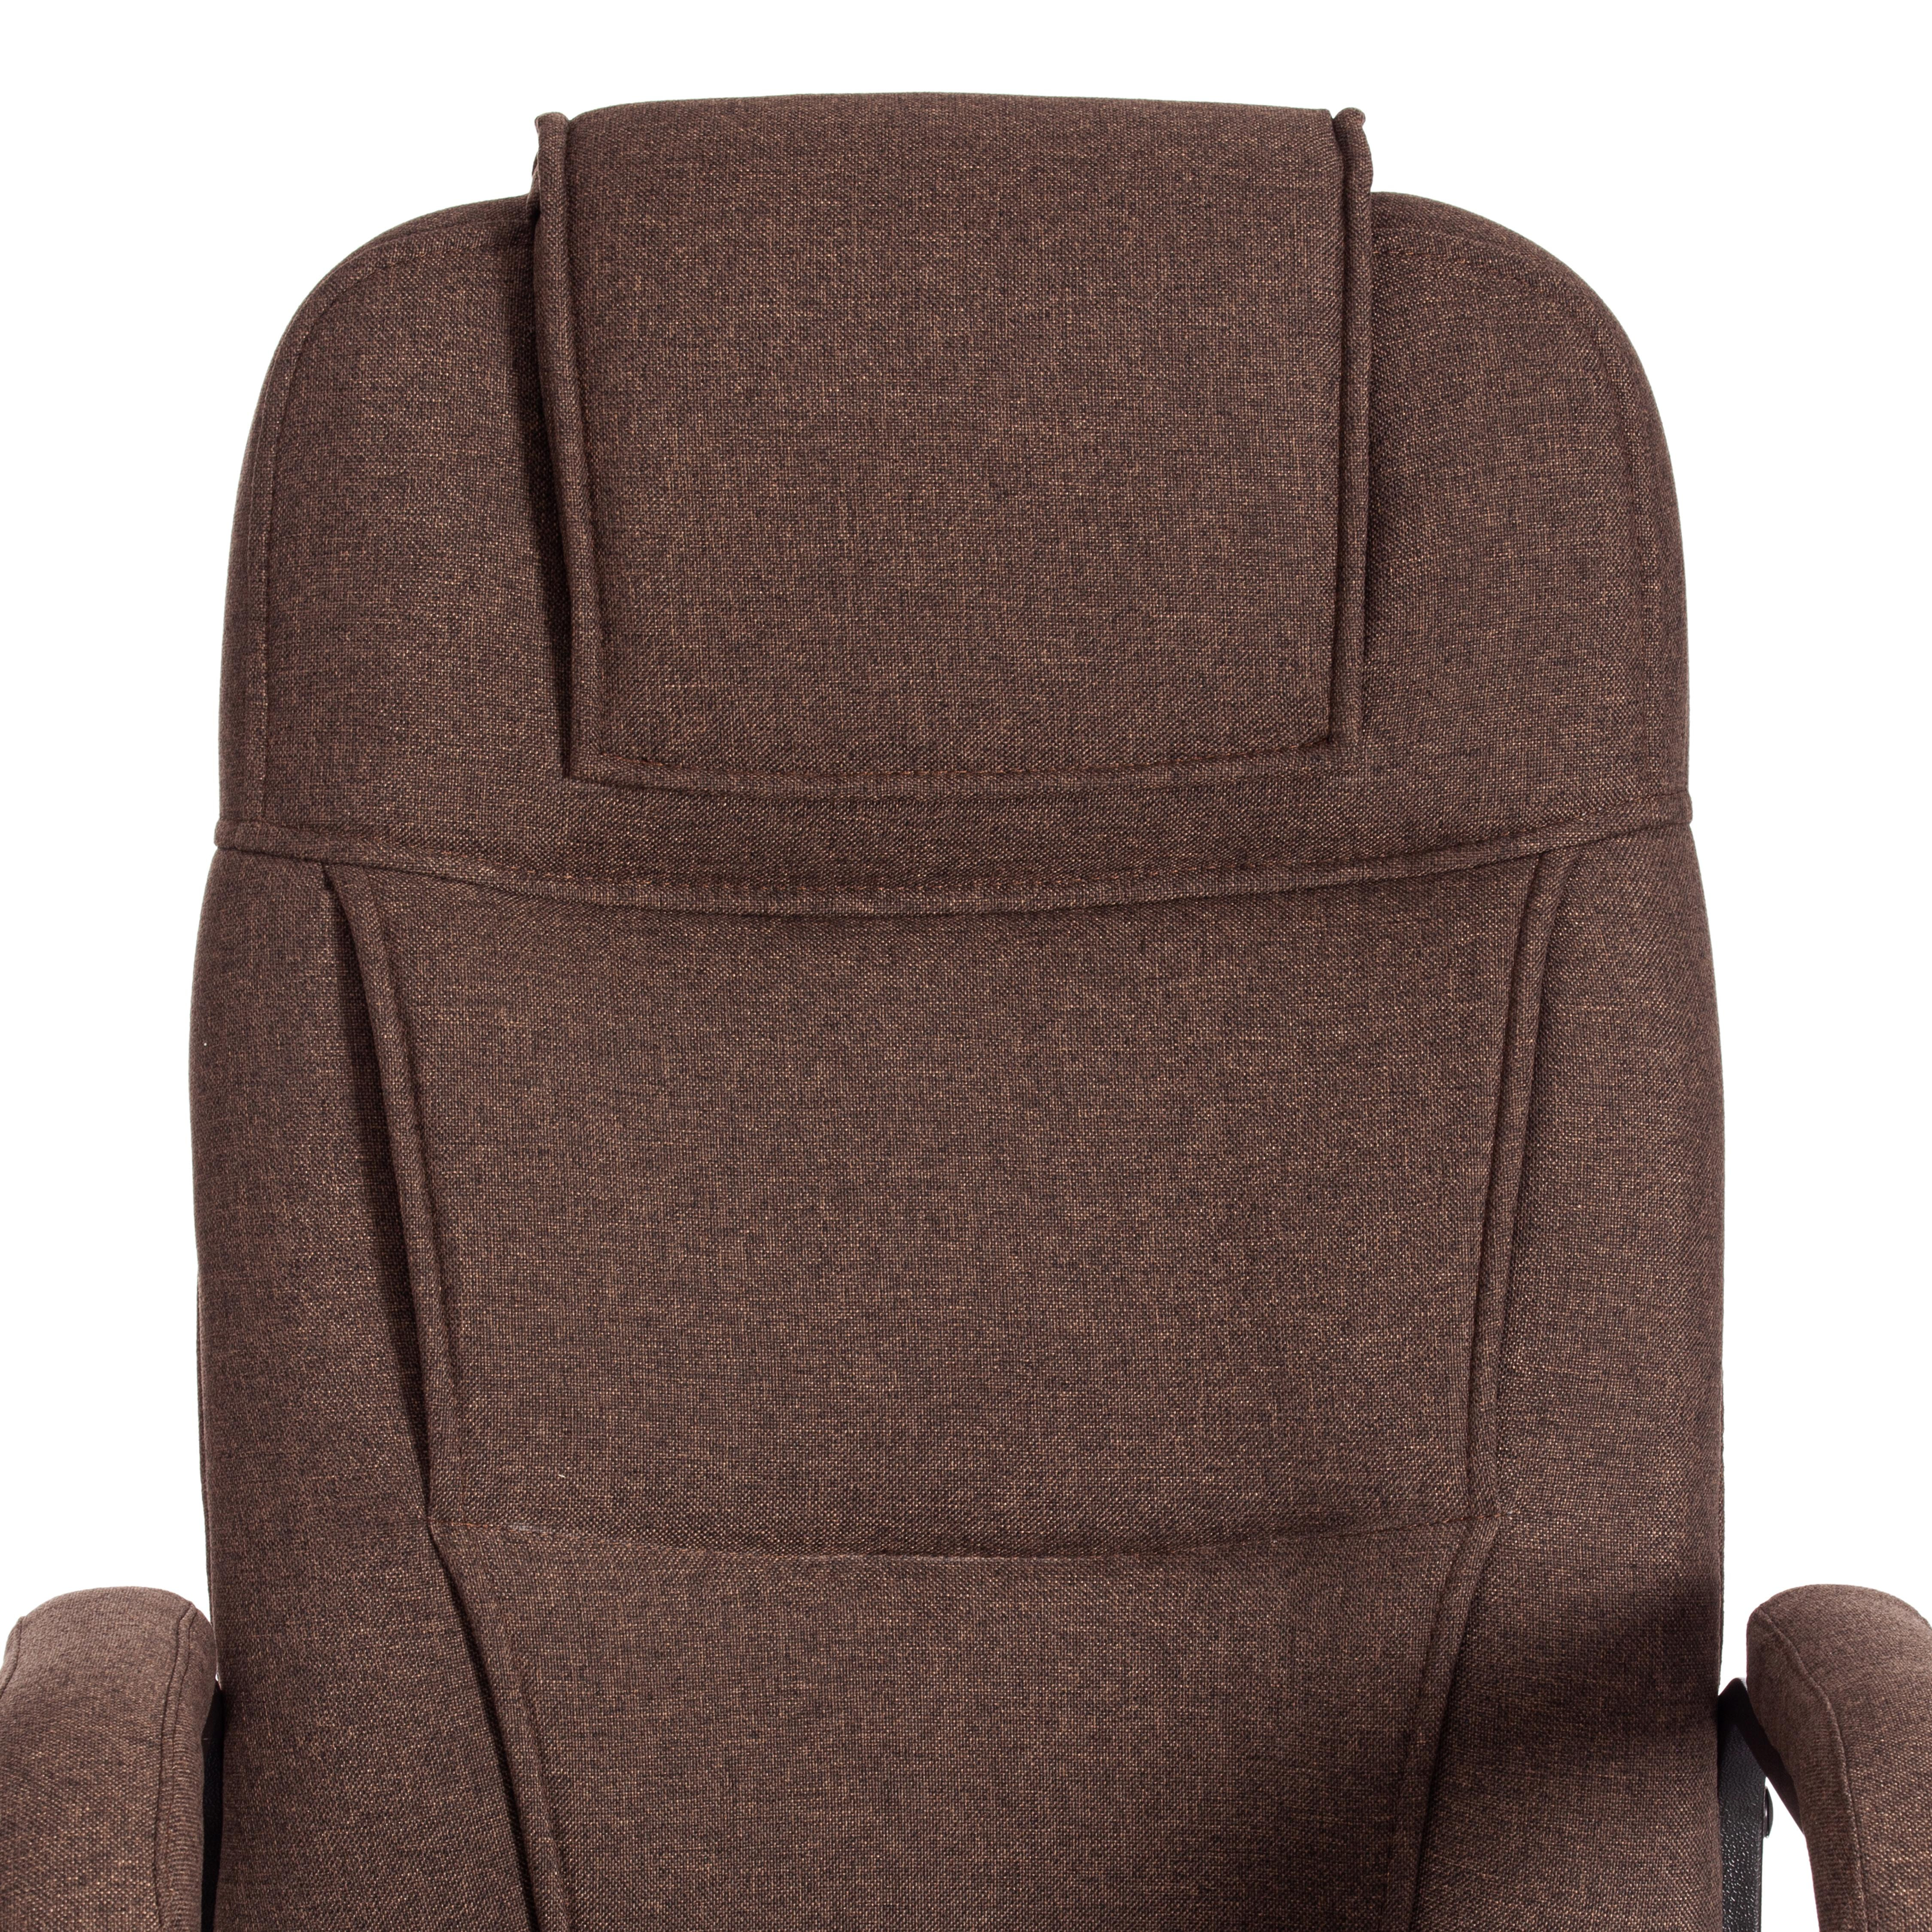 Кресло BERGAMO хром (22) ткань, коричневый, 3М7-147